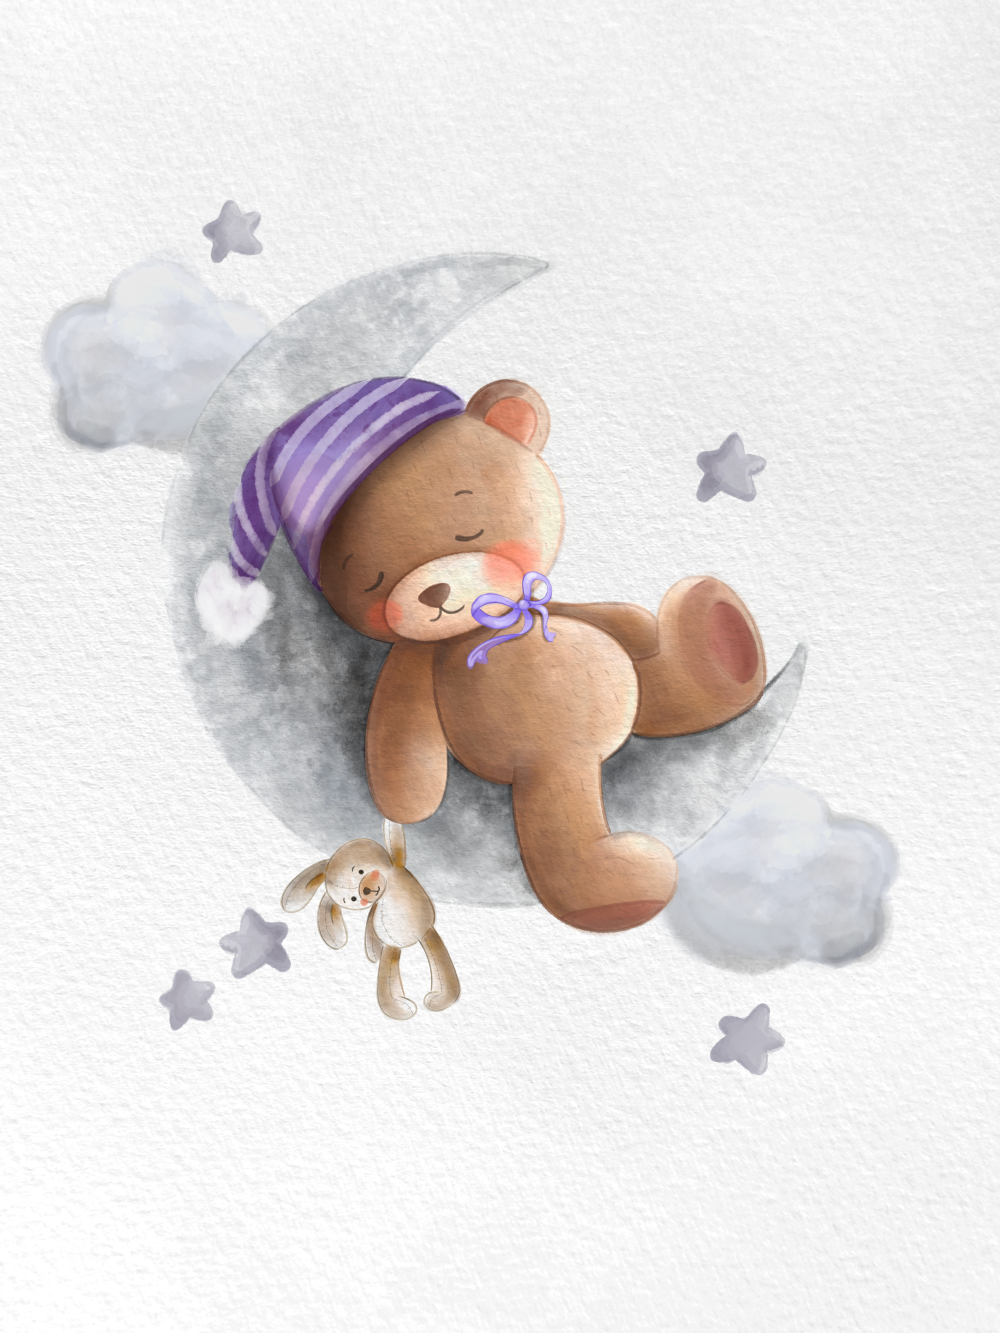 Originální dárek k narození dítěte, miminka, obraz medvídek na měsíci s čepičkou, mašlí a plyšákem vytištěný na plakát | ZivotniOkamziky.cz